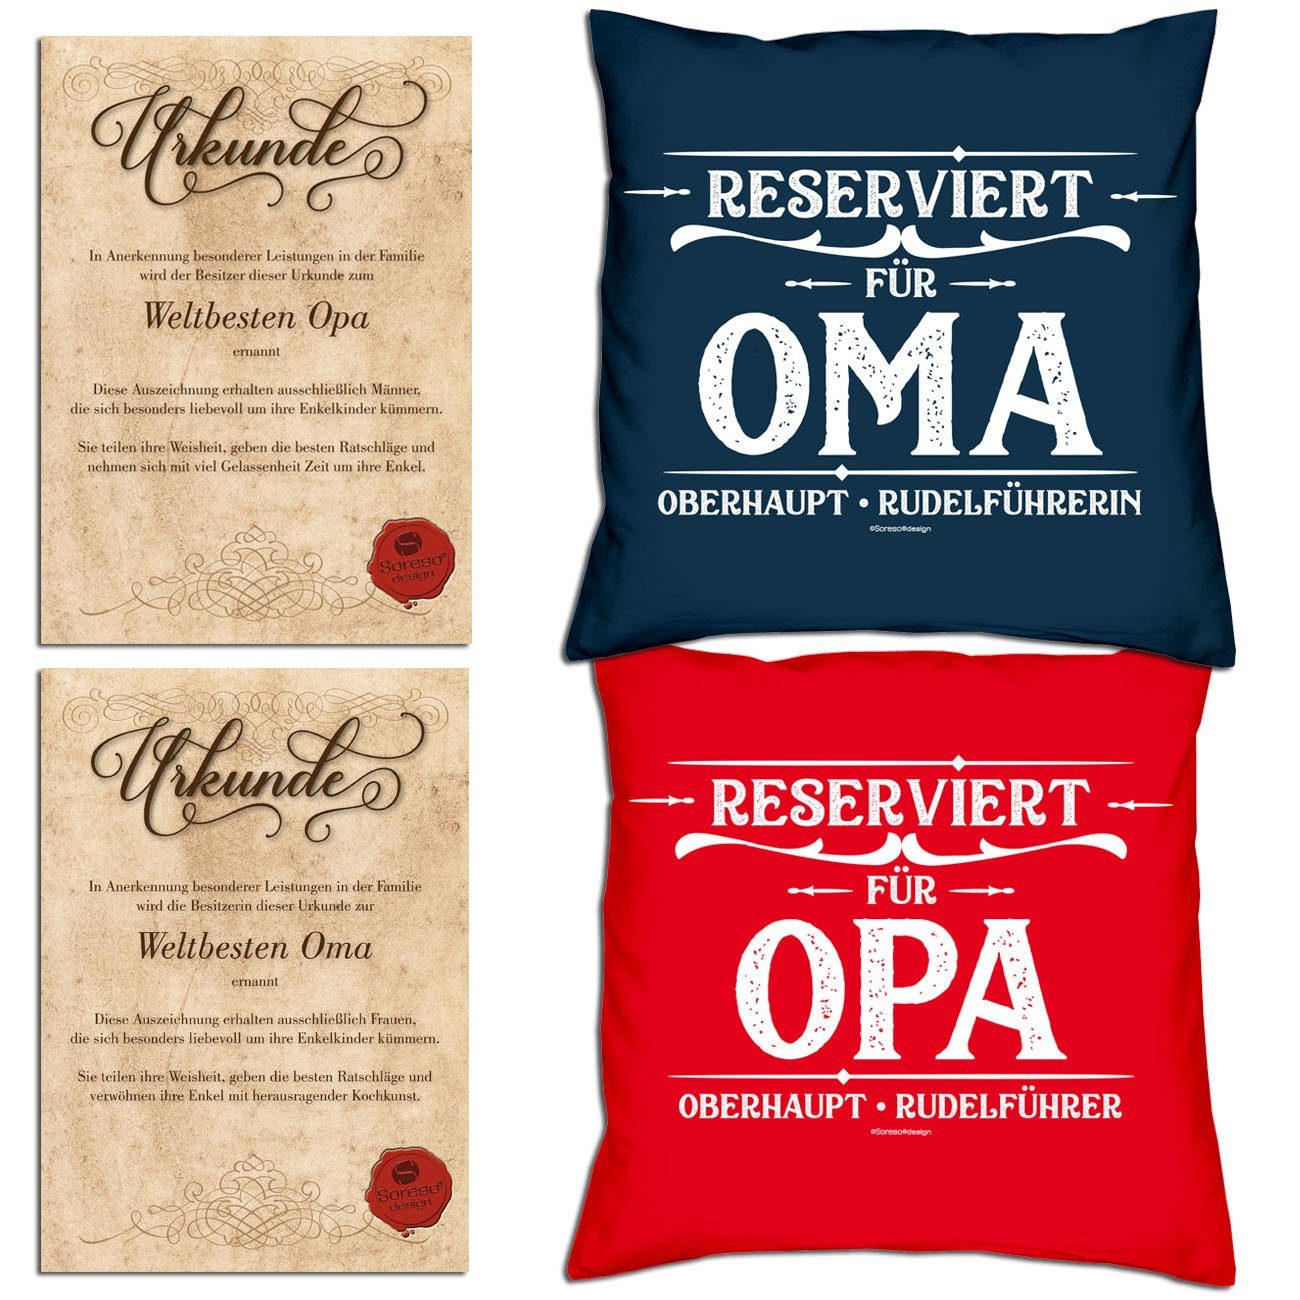 Soreso® Dekokissen Kissen-Set Reserviert für Opa Reserviert für Oma mit Urkunden, Weihnachtsgeschenk für Großeltern navy-blau | Dekokissen